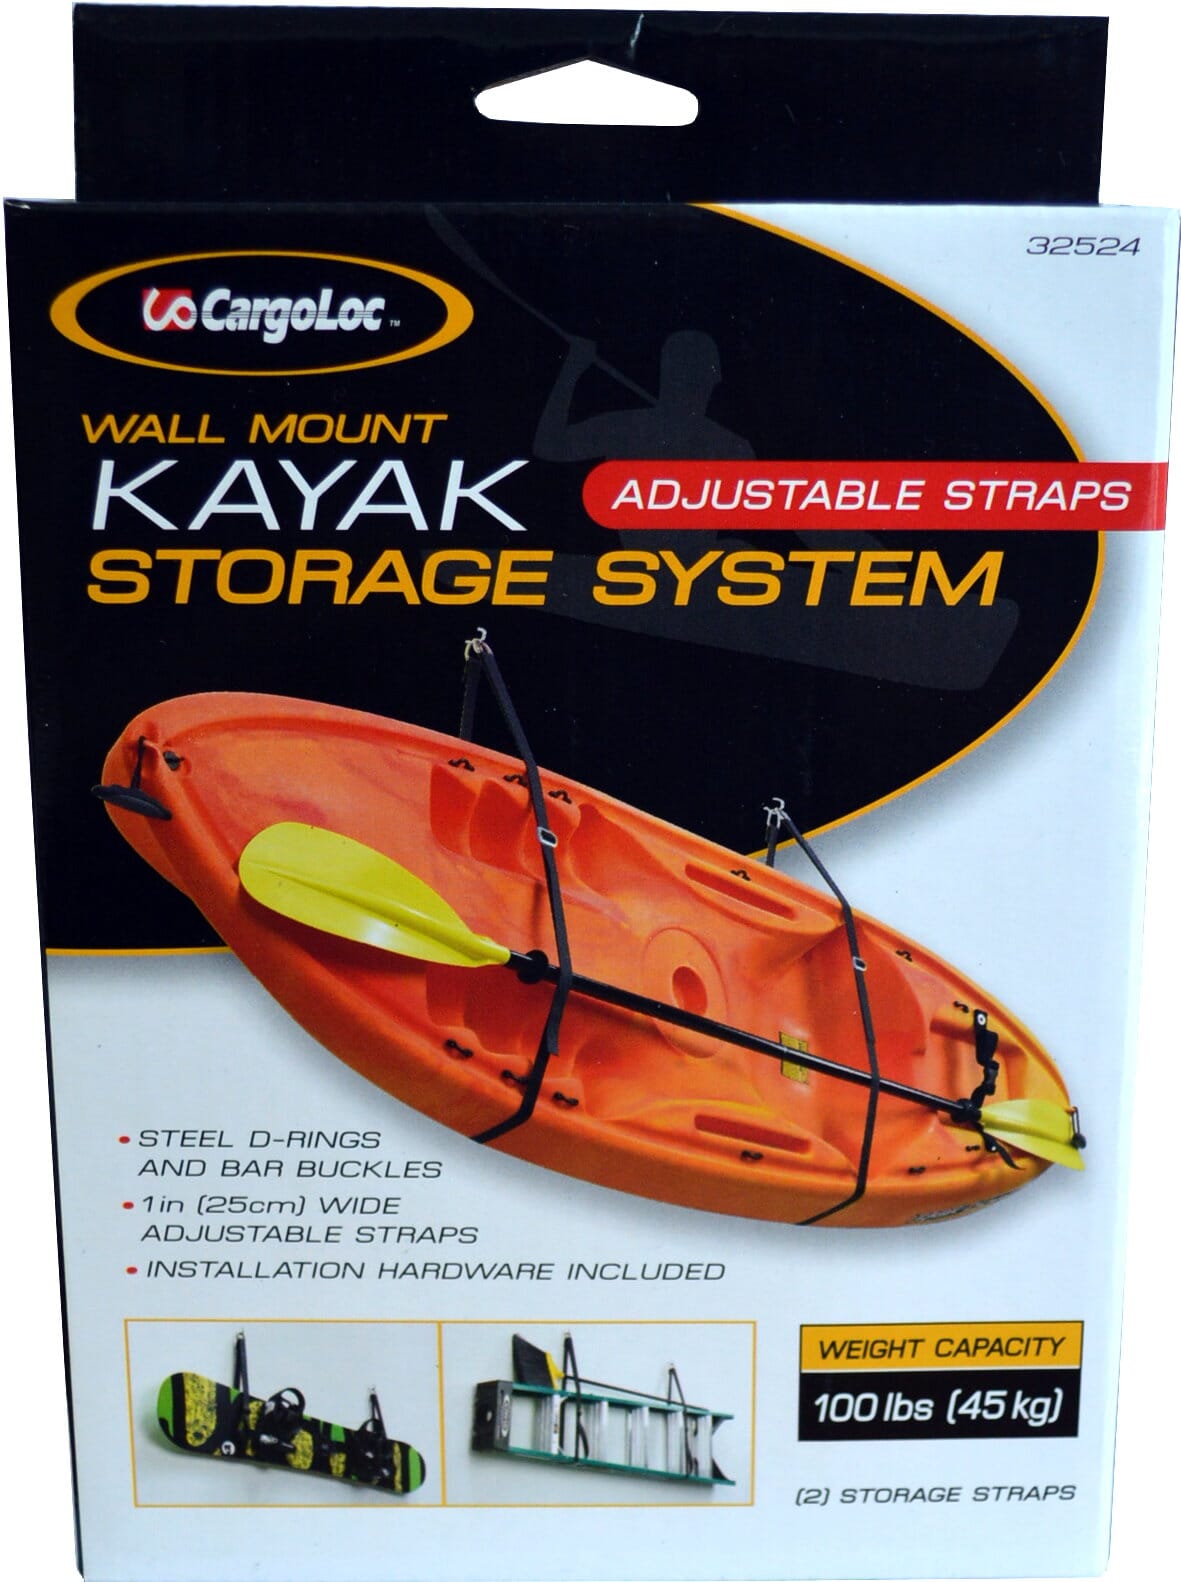 Cargoloc Kayak Wall Mount Storage System #32524